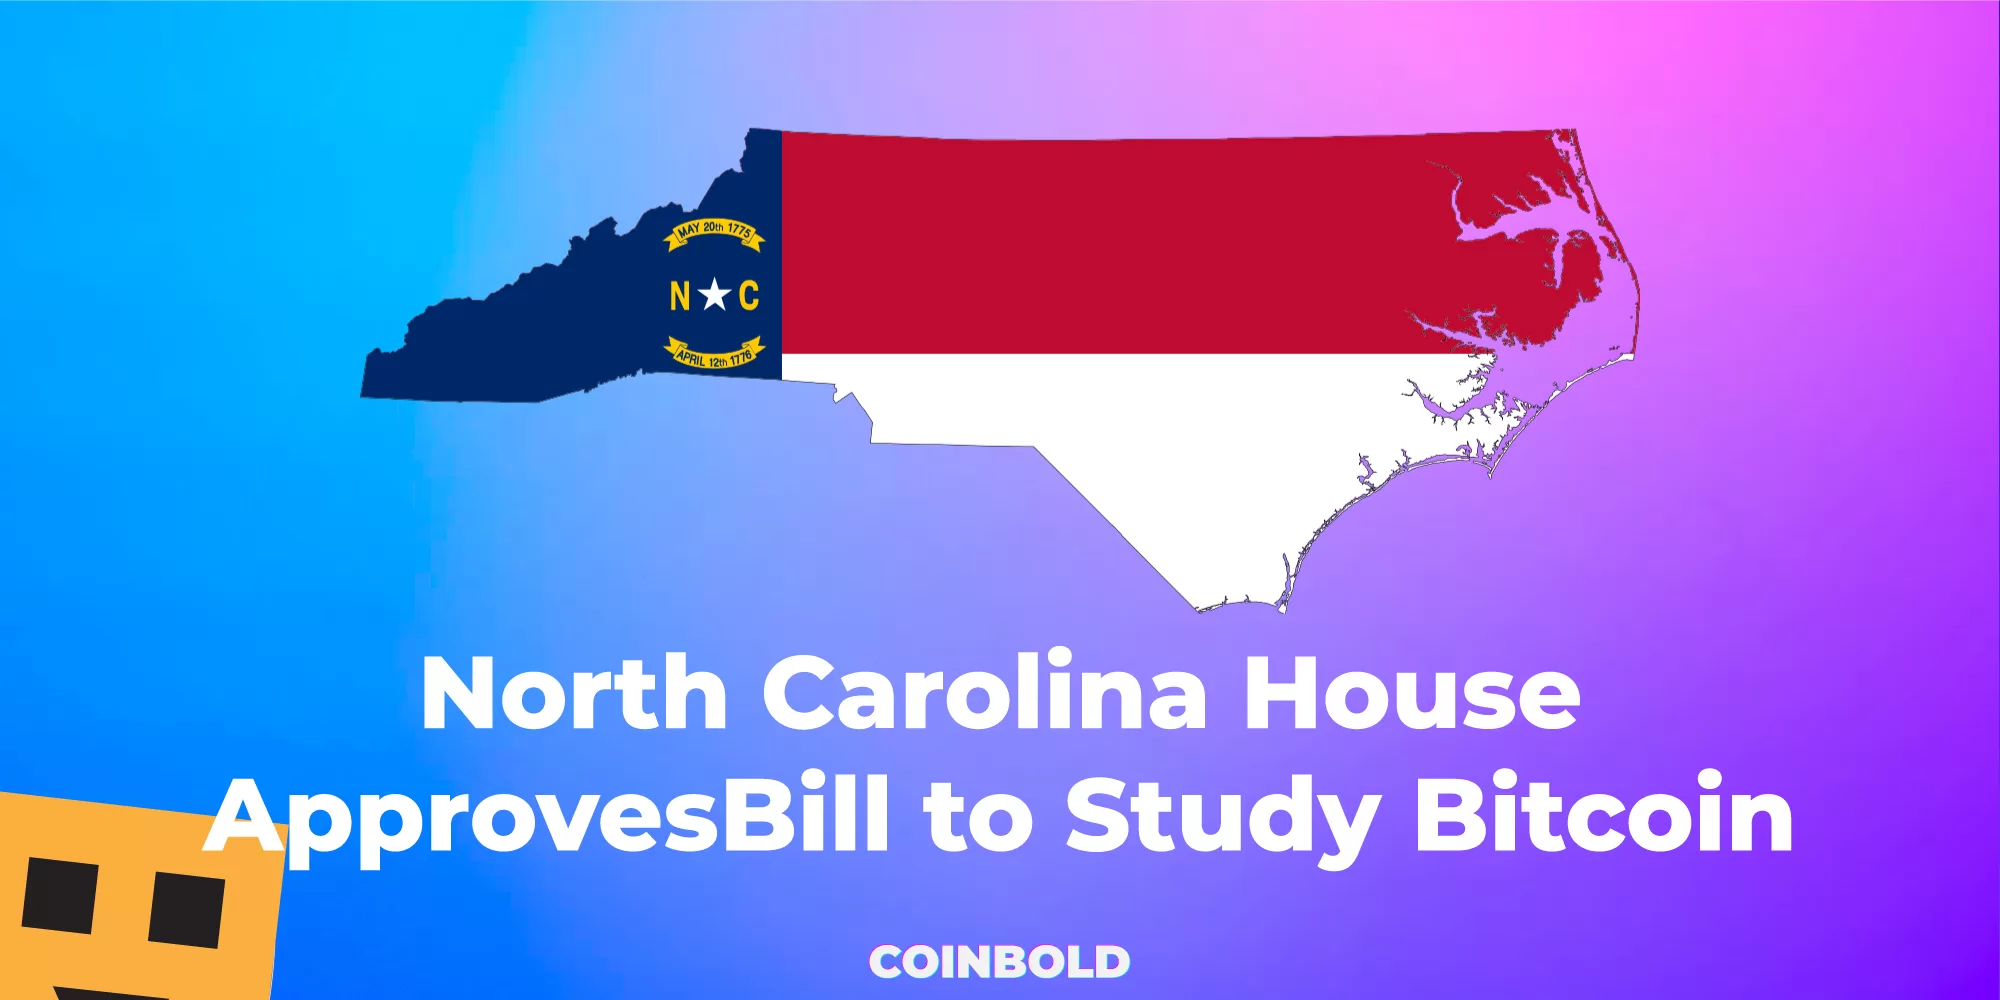 North Carolina House Approves Bill to Study Bitcoin